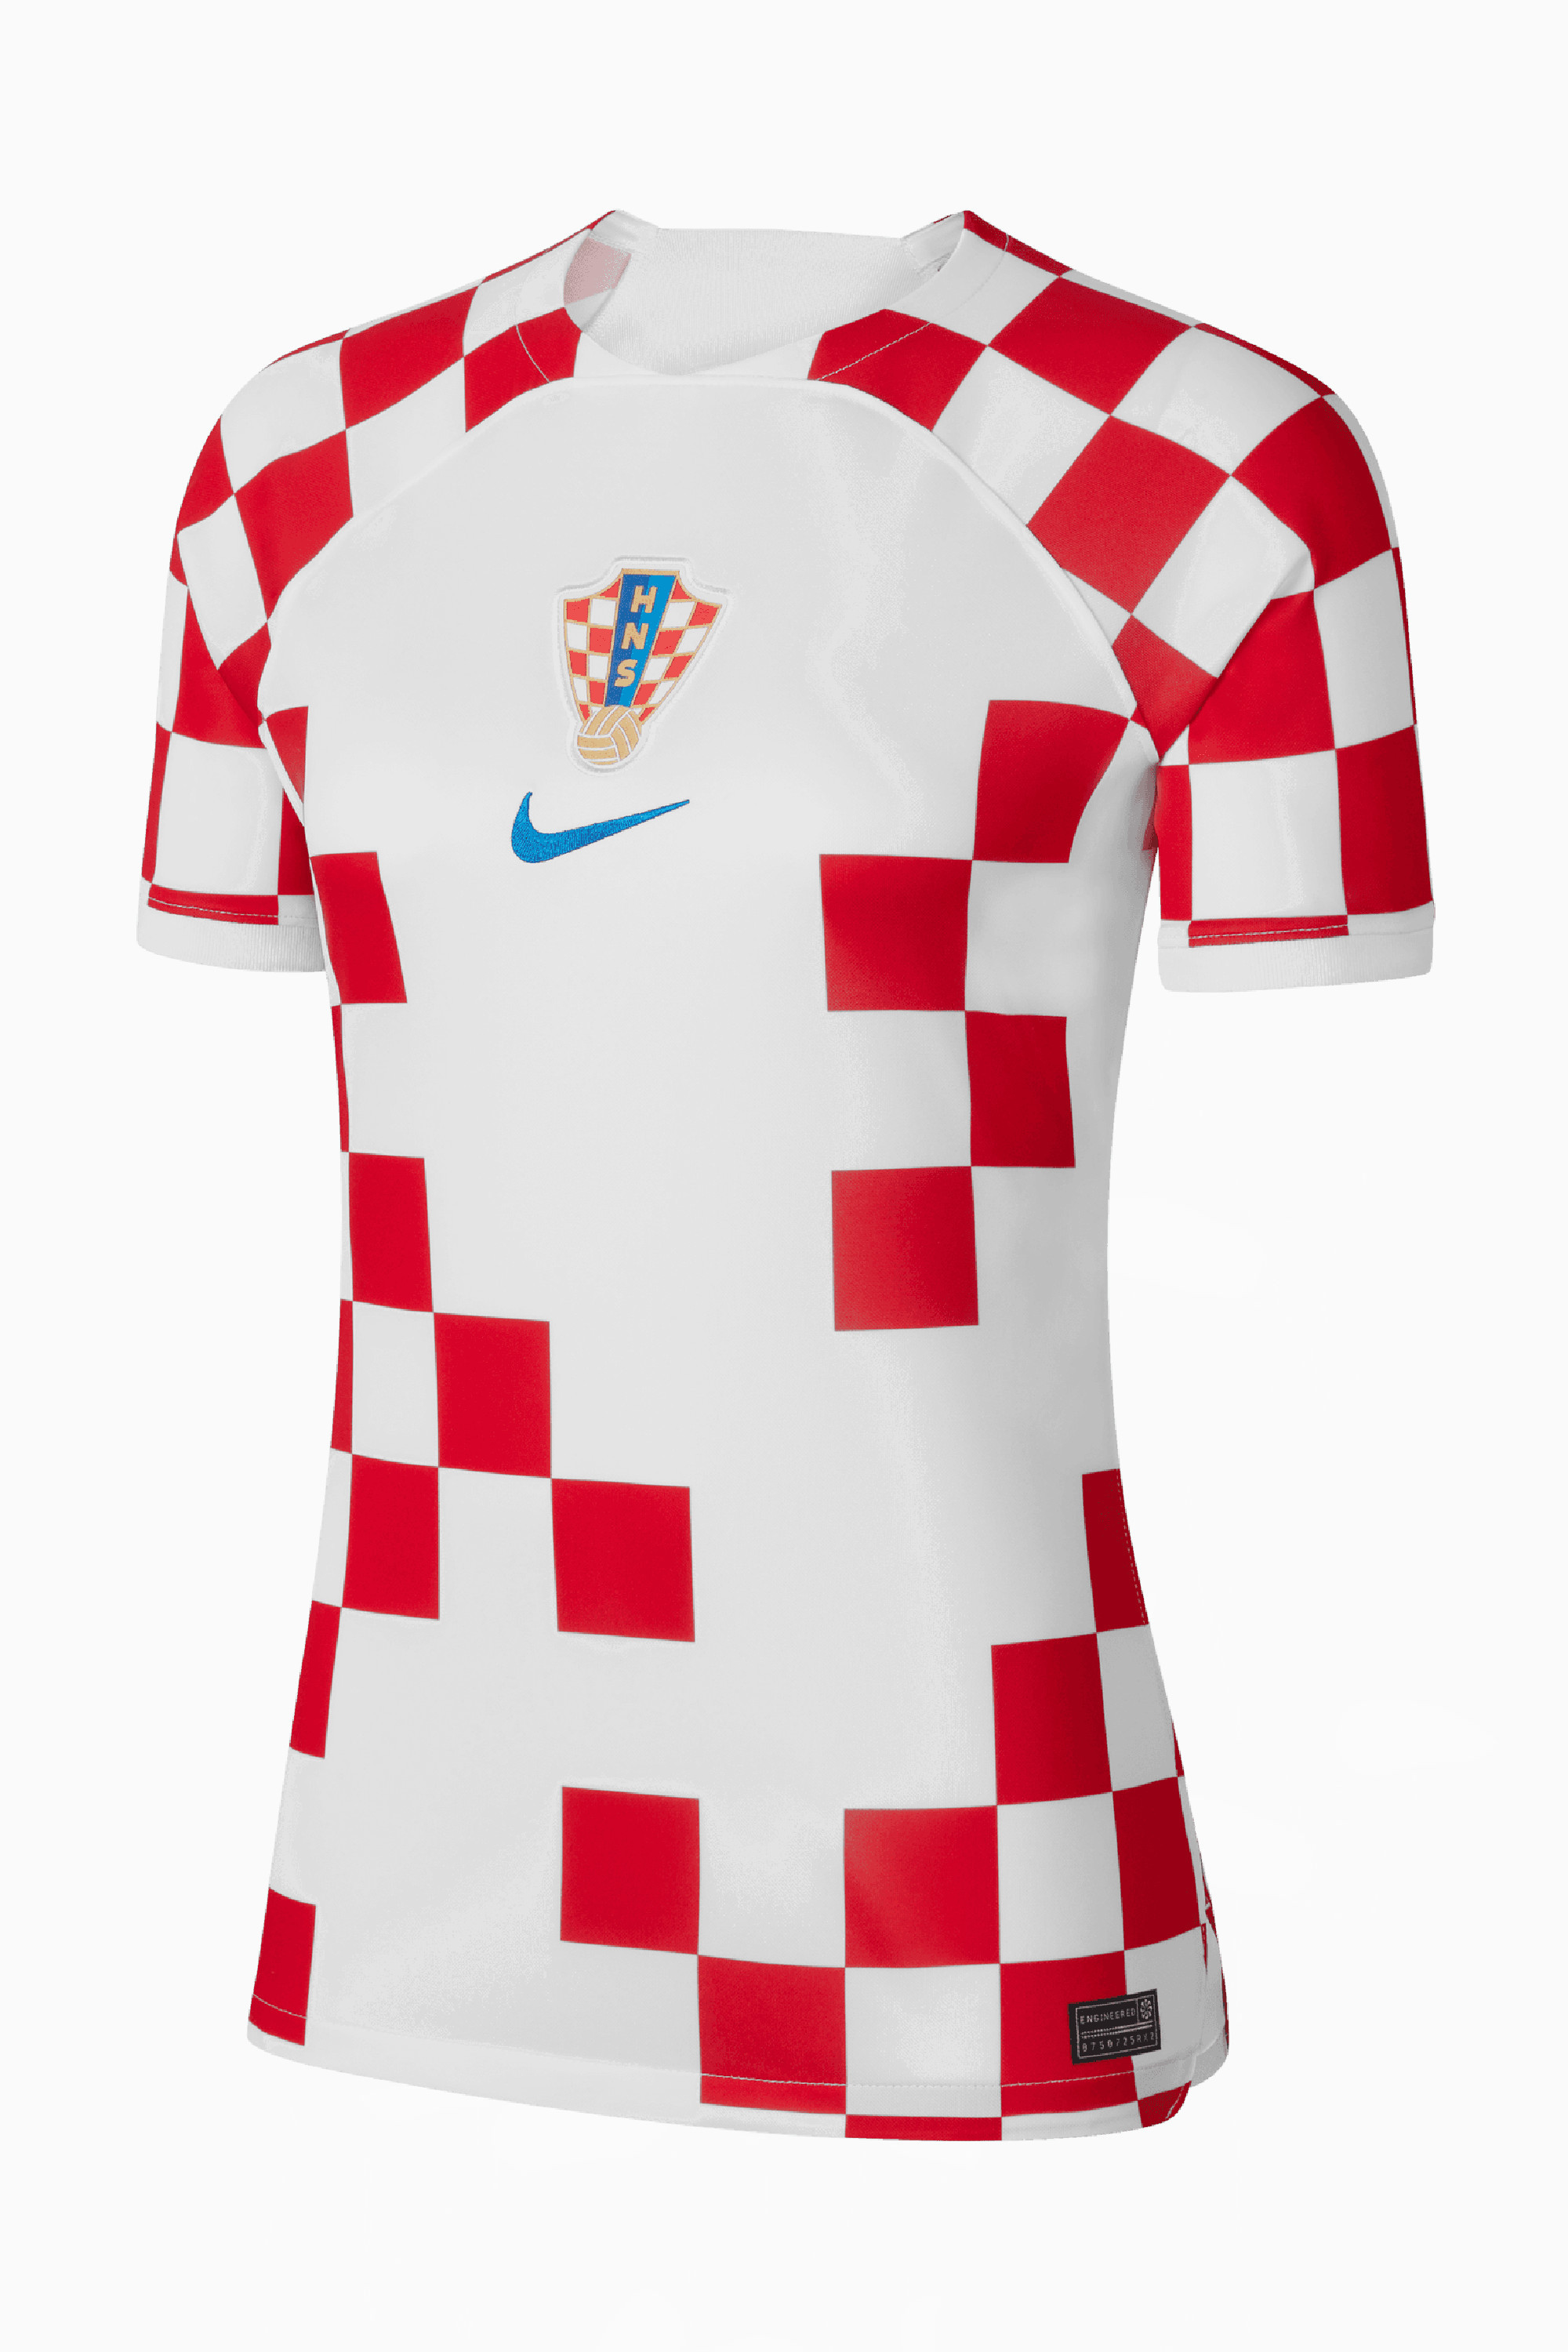 croatia football shirt 2018